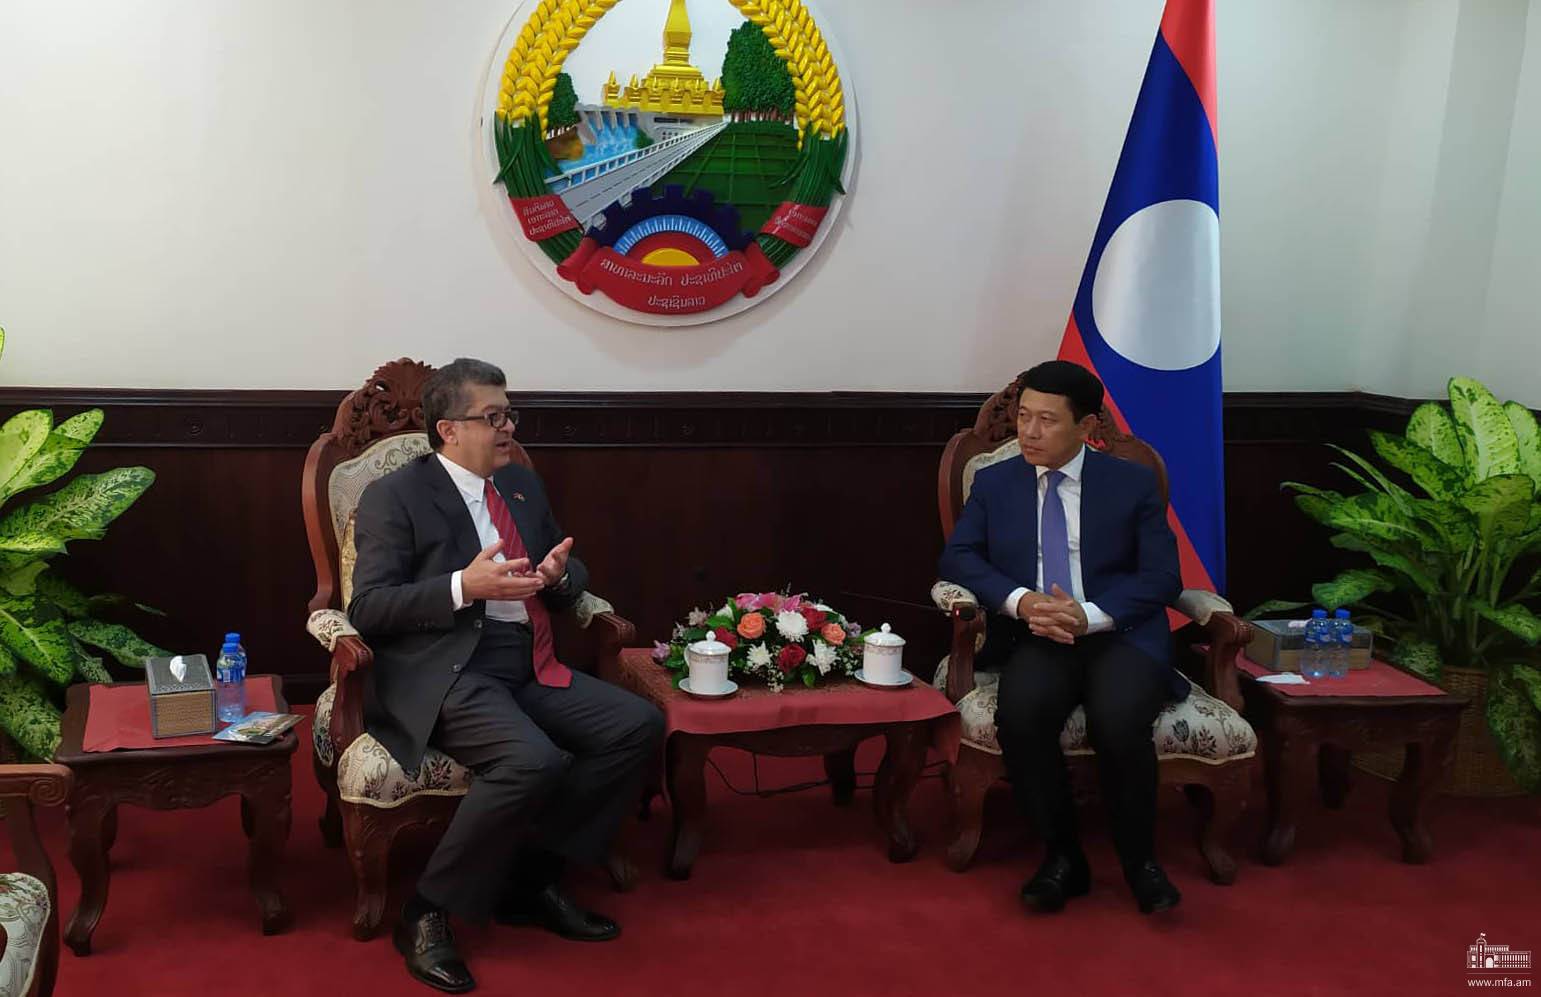 ՀՀ դեսպան Վահրամ Կաժոյանը հանդիպել է Լաոսի վարչապետի և փոխվարչապետի հետ